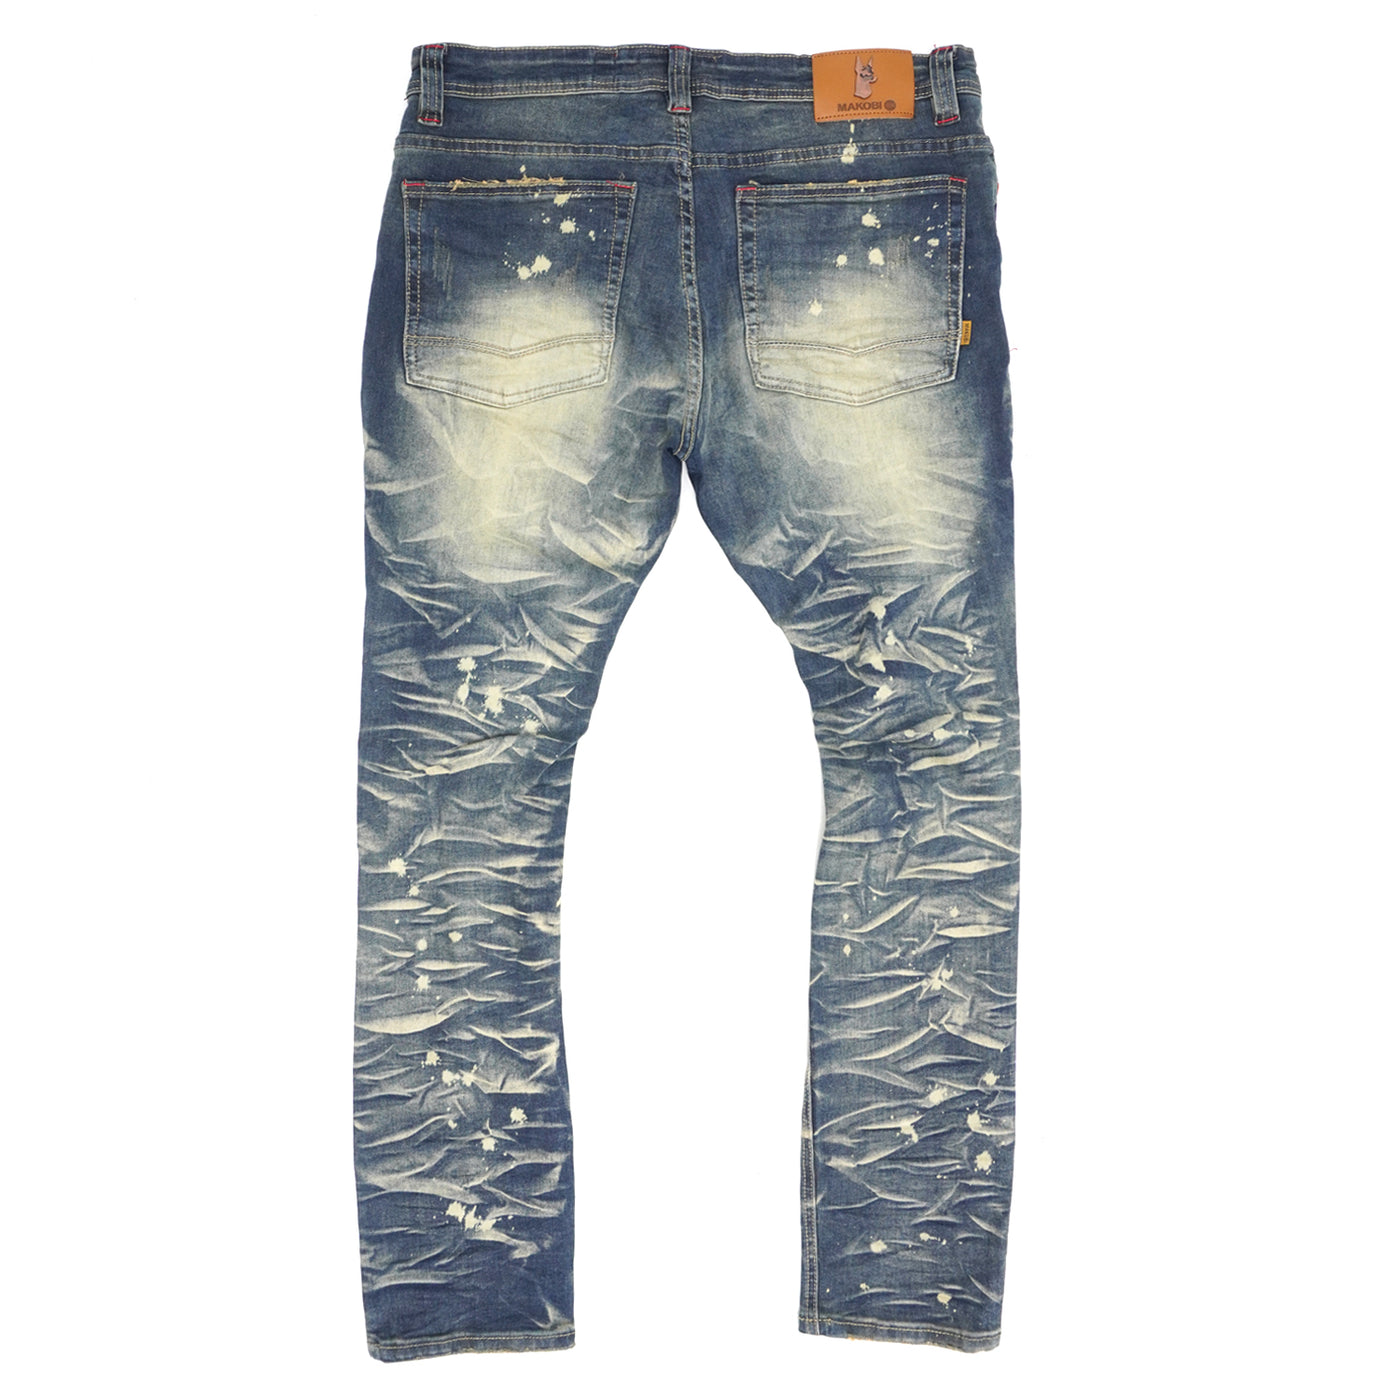 M1780 Pensacola  Shredded Jeans  - Vintage Wash